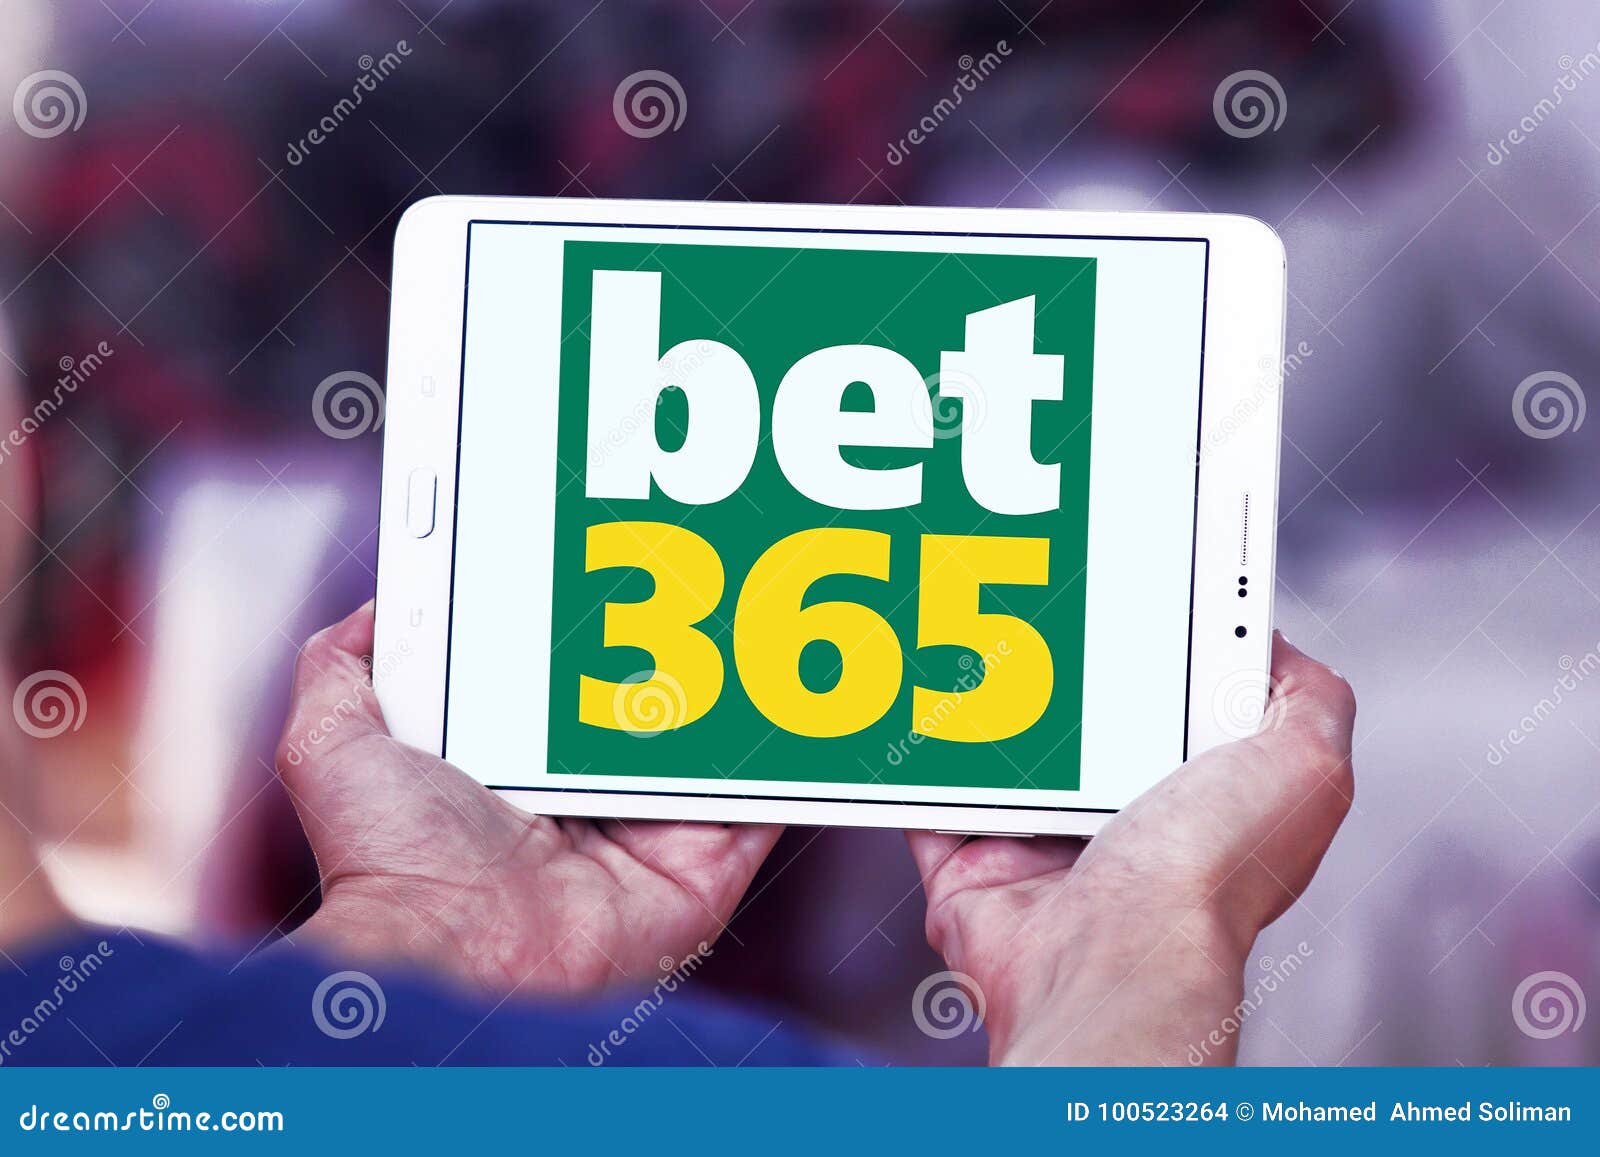 bonus bet365 casino